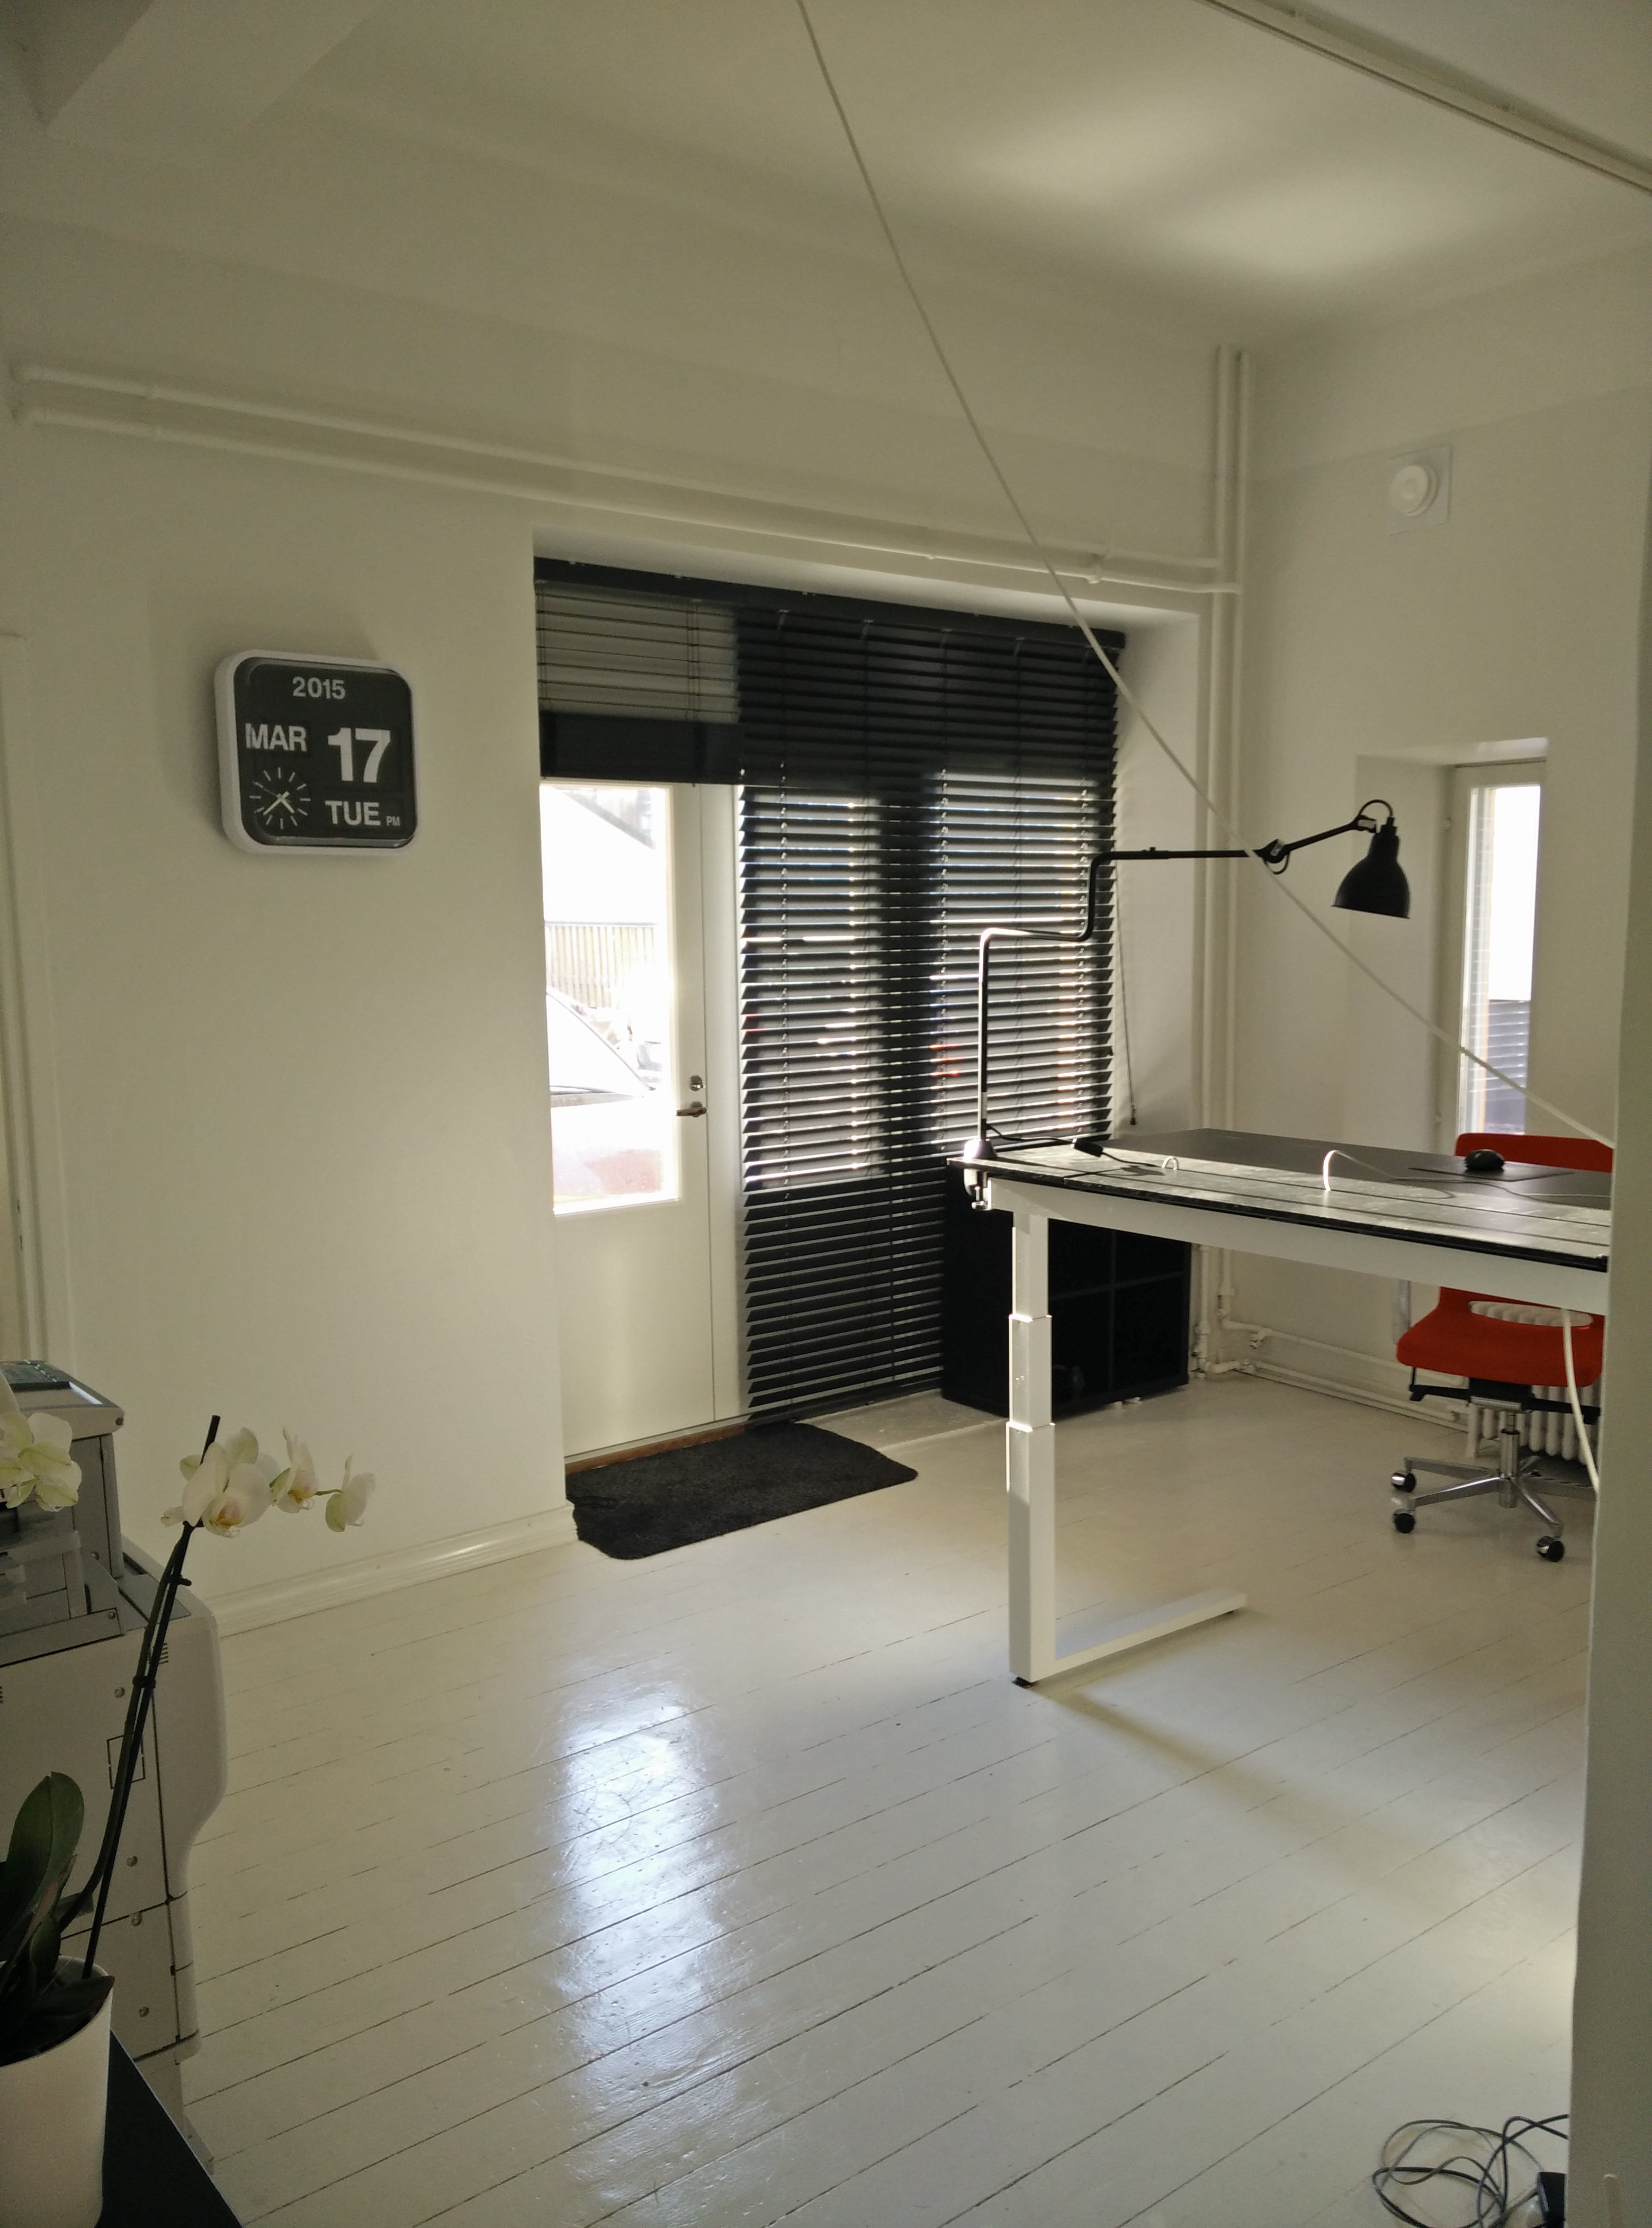 Hamari new office moves on